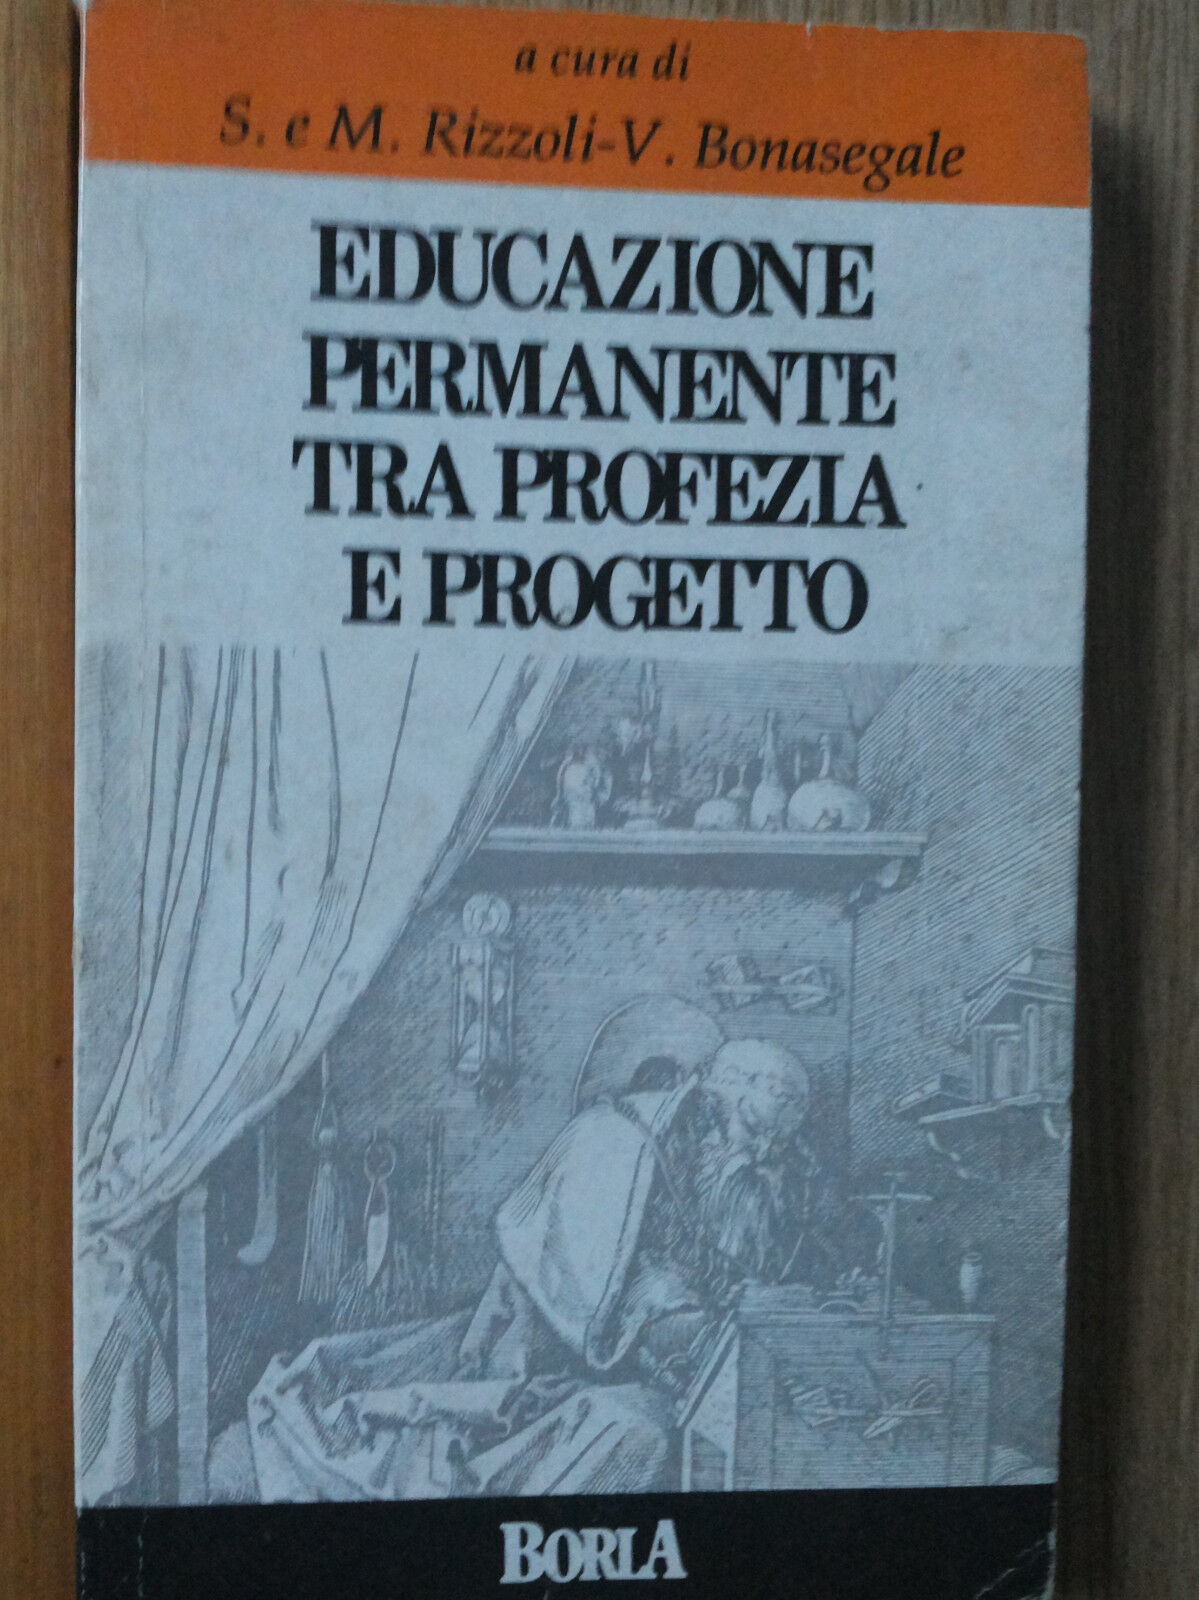 Educazione permanente tra profezia e progetto - AA.VV. - Borla,1989 - R